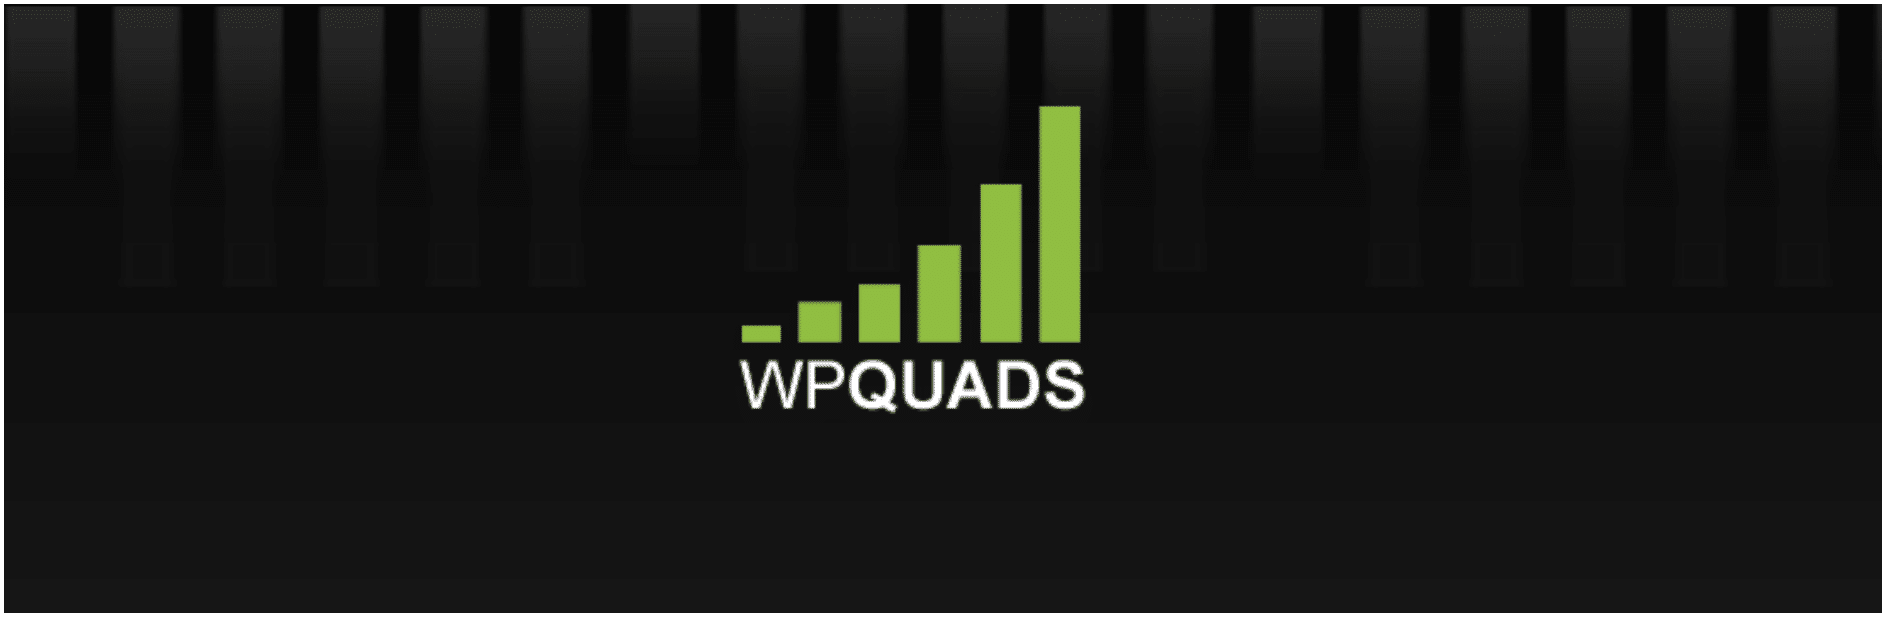 AdSense plugin WP QUADS